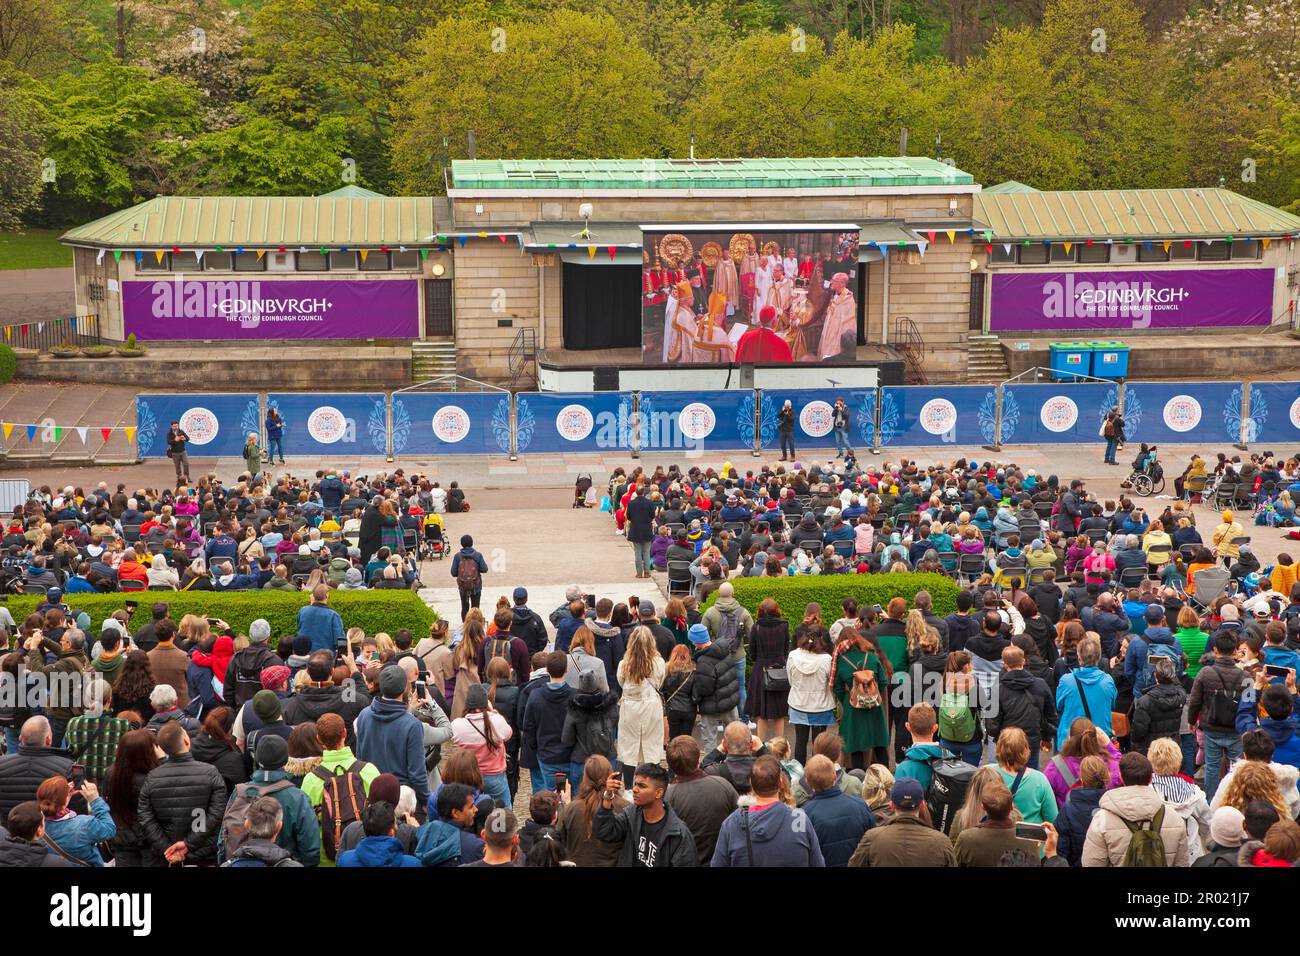 Edinburgh Princes Street Gardens, Schottland, Großbritannien. 6. Mai 2023 King Charles 111 Krönung live auf der großen Leinwand. Hunderte sehen die Krönung auf der großen Leinwand im Stadtzentrum. Kredit: Arch White/alamy Live News. Stockfoto